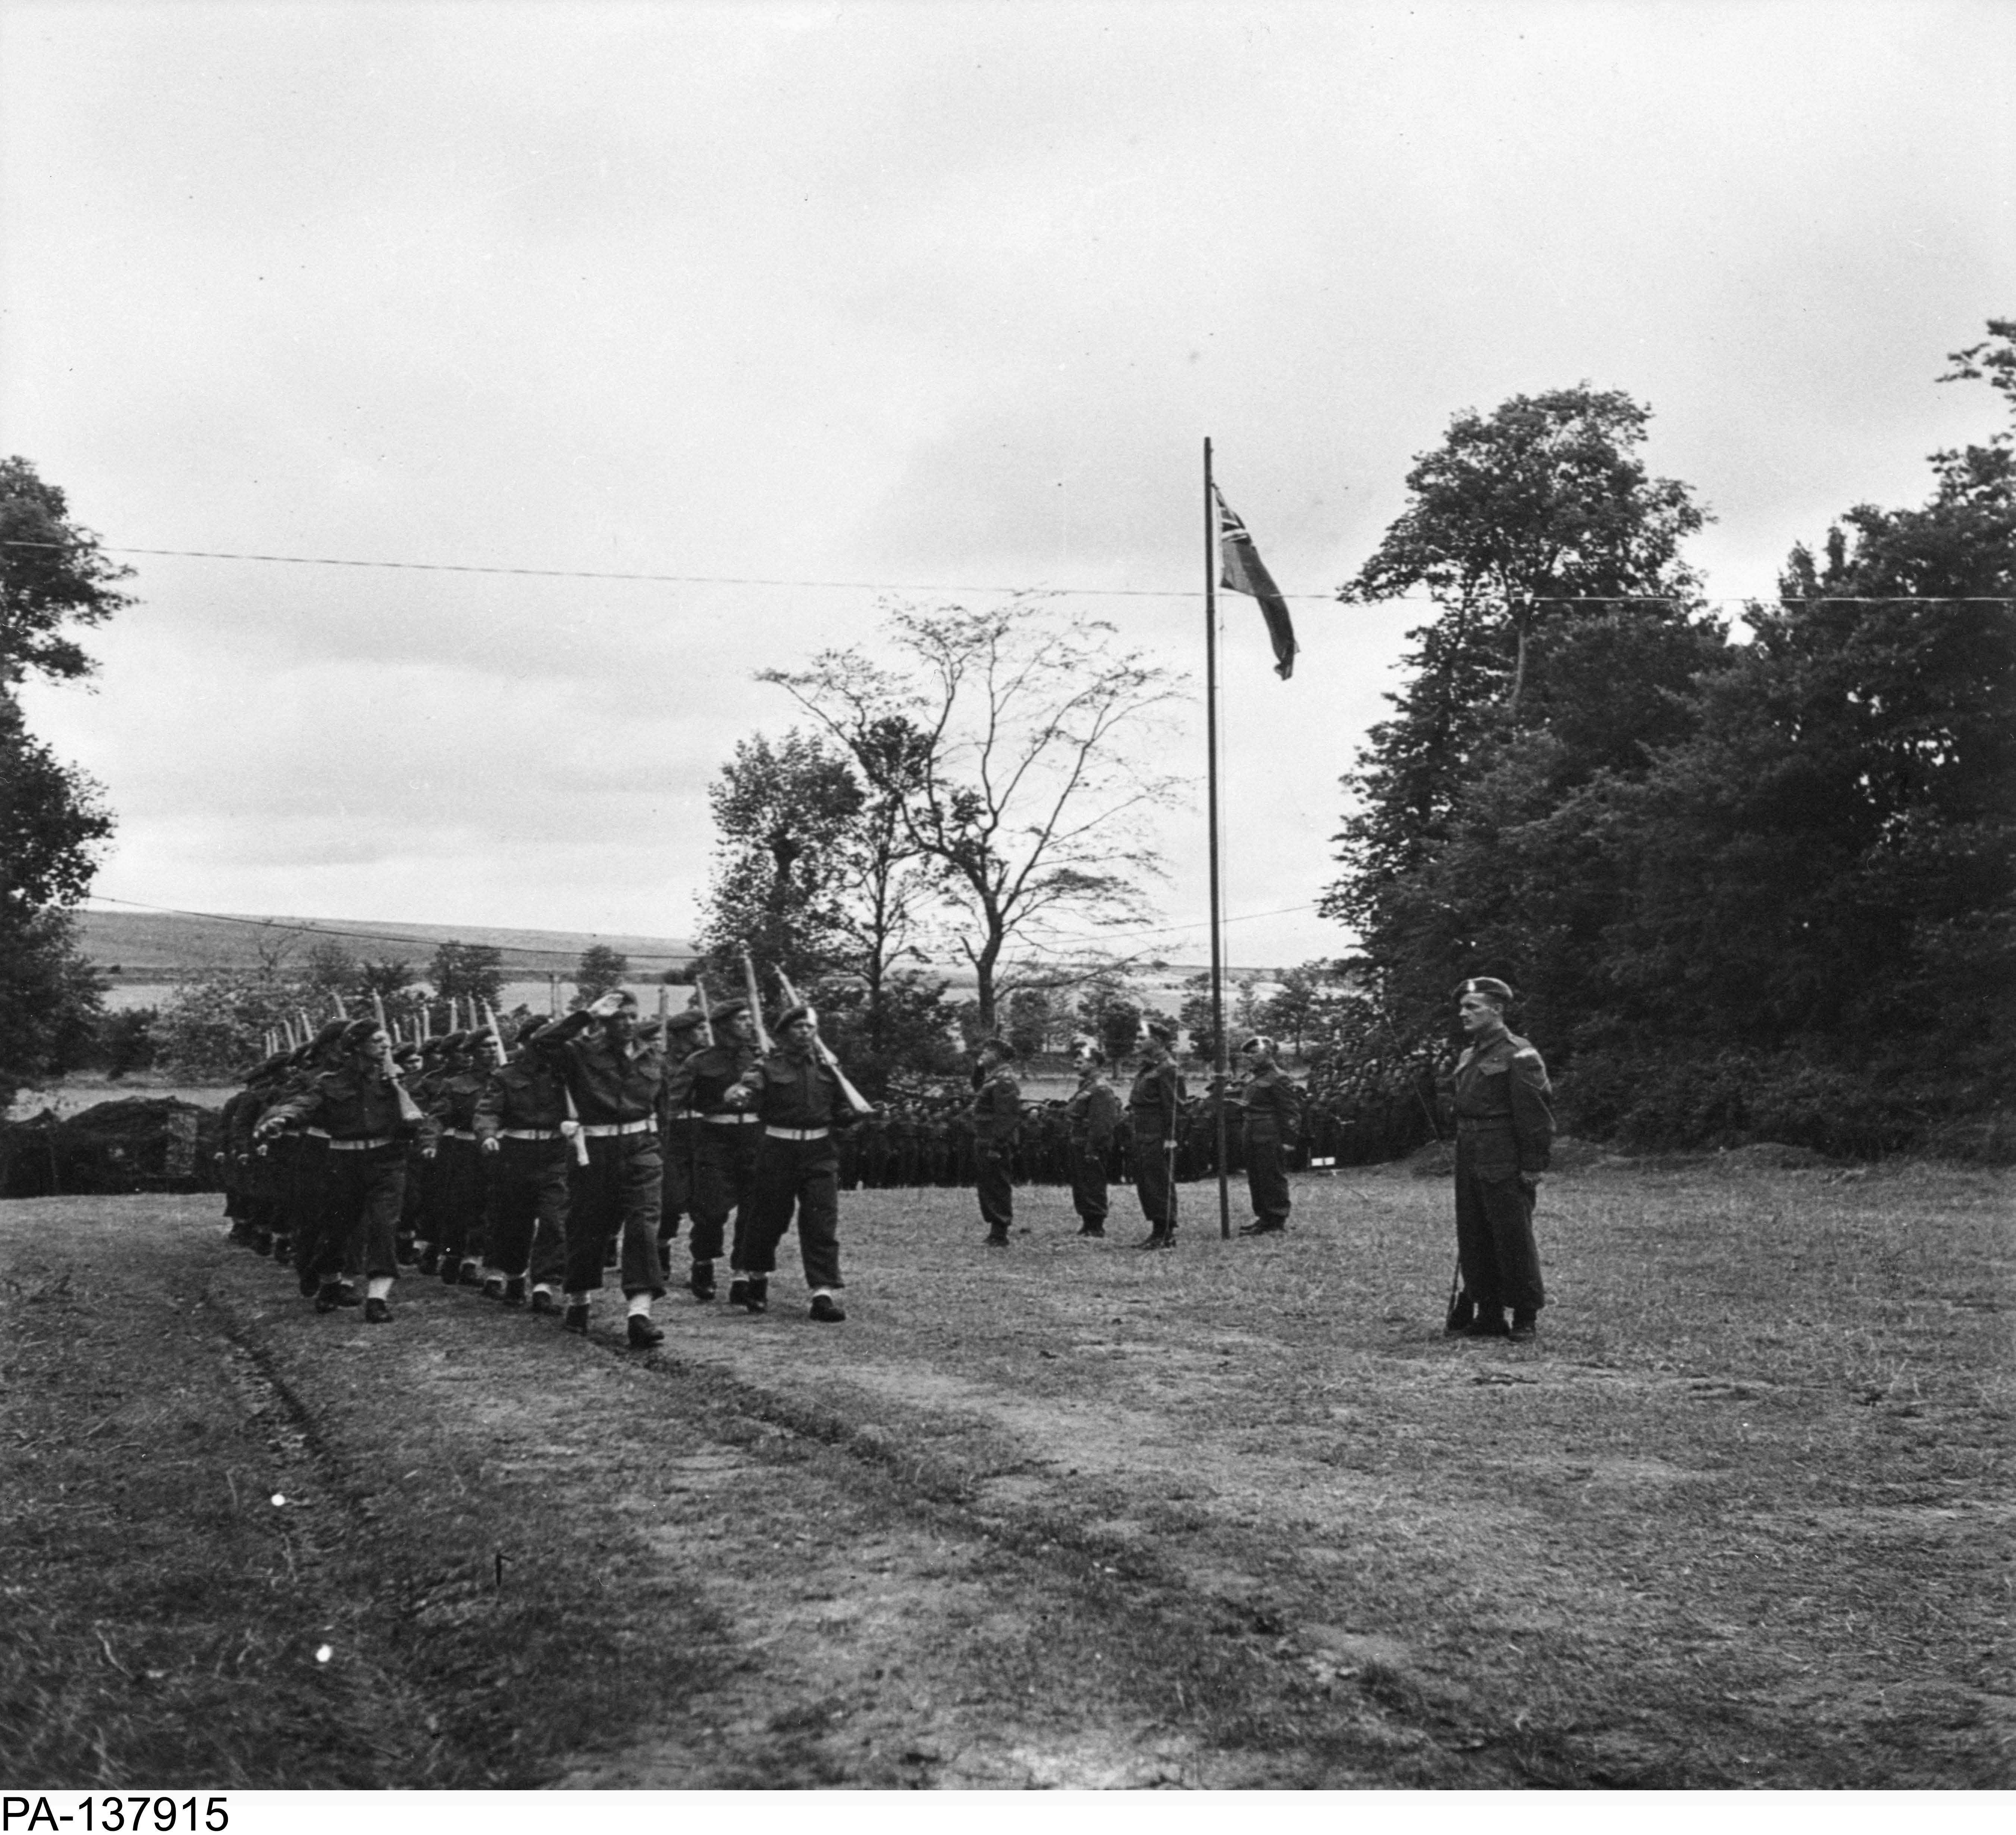 Photographie en noir et blanc – Trois rangées de soldats défilent derrière un drapeau Red Ensign et des officiers supérieurs. Tous adressent un salut. Ils sont dehors, dans un champ gazonné et entouré d’arbres.